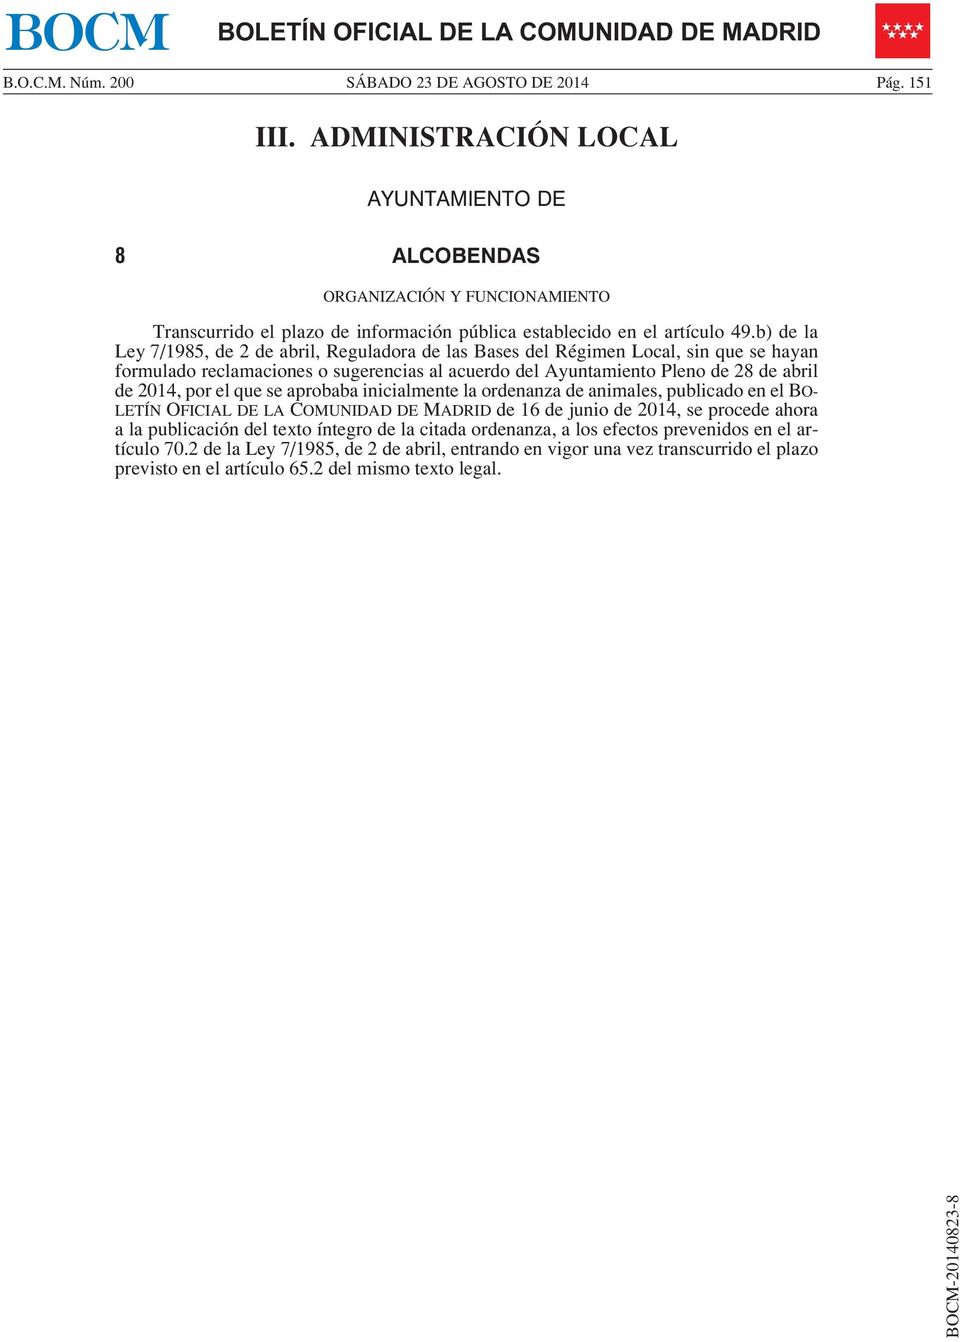 b) de la Ley 7/1985, de 2 de abril, Reguladora de las Bases del Régimen Local, sin que se hayan formulado reclamaciones o sugerencias al acuerdo del Ayuntamiento Pleno de 28 de abril de 2014, por el